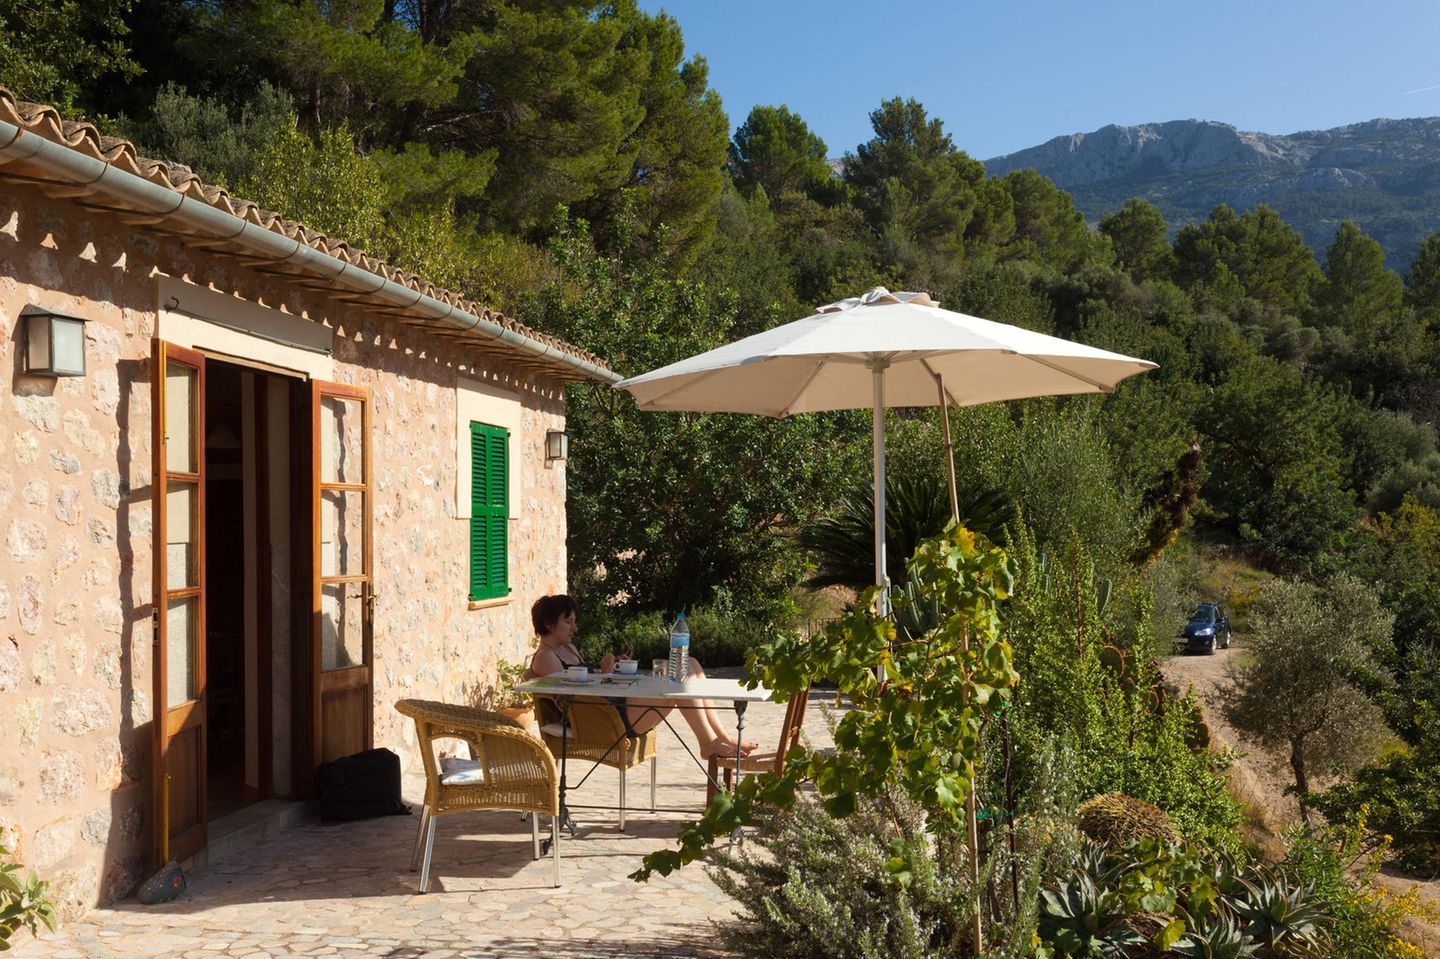 Beliebte Unterkunft gerade in Corona-Zeiten: Die Ferien in einer gemieteten Finca auf Mallorca verbringen.